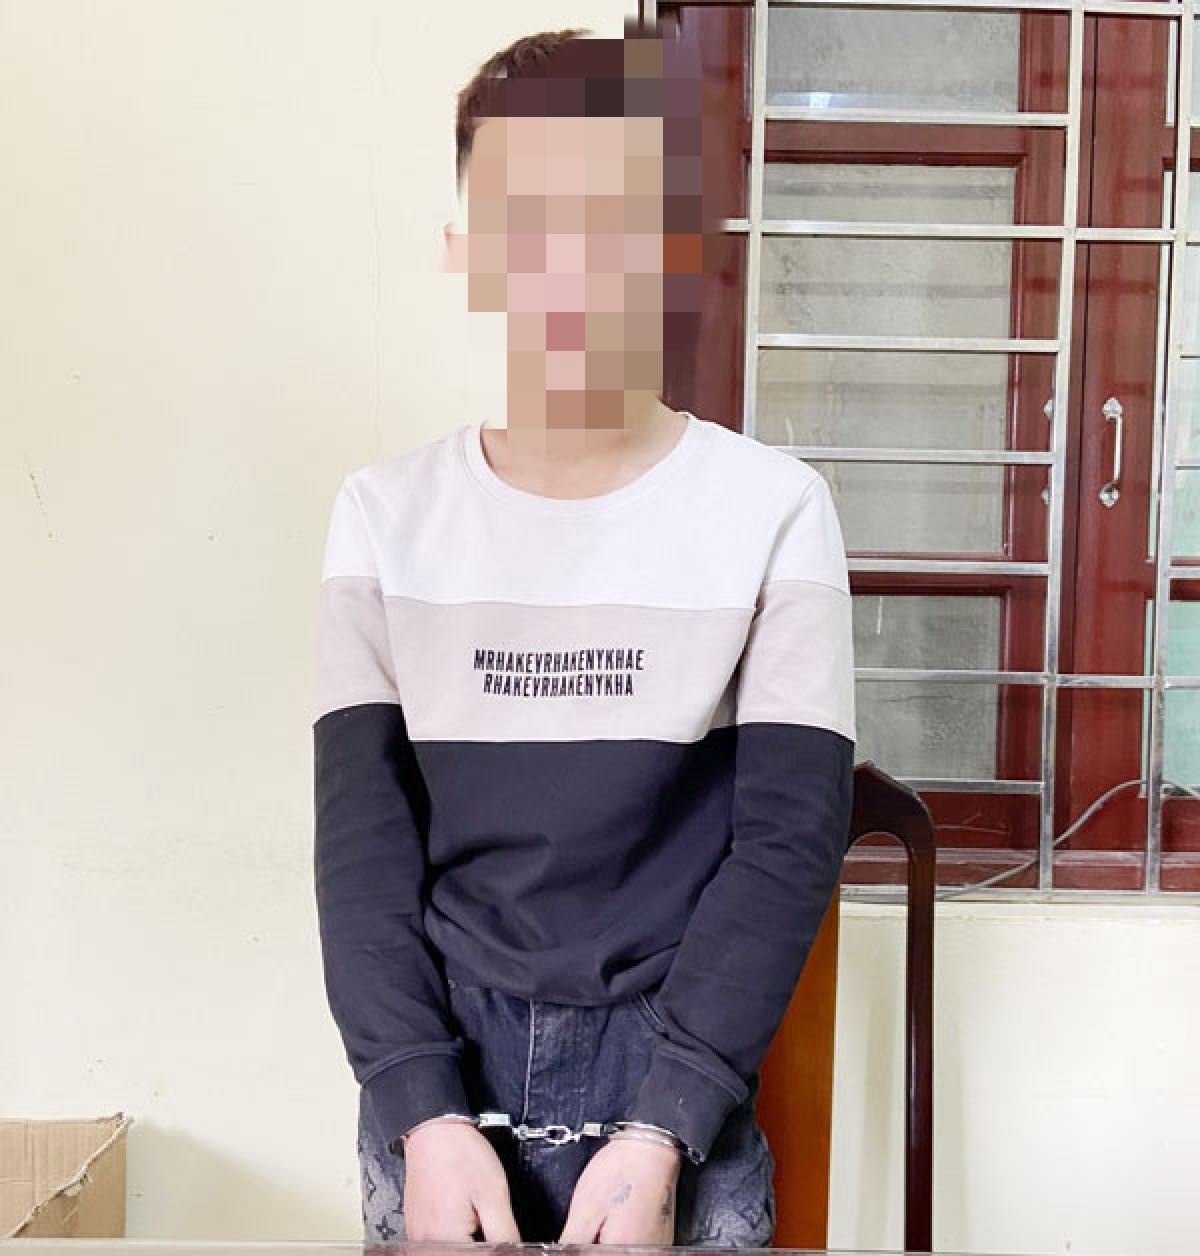 Tạm giữ đối tượng liên quan vụ nữ sinh lớp 7 sinh con trong nhà tắm ở Bắc Giang